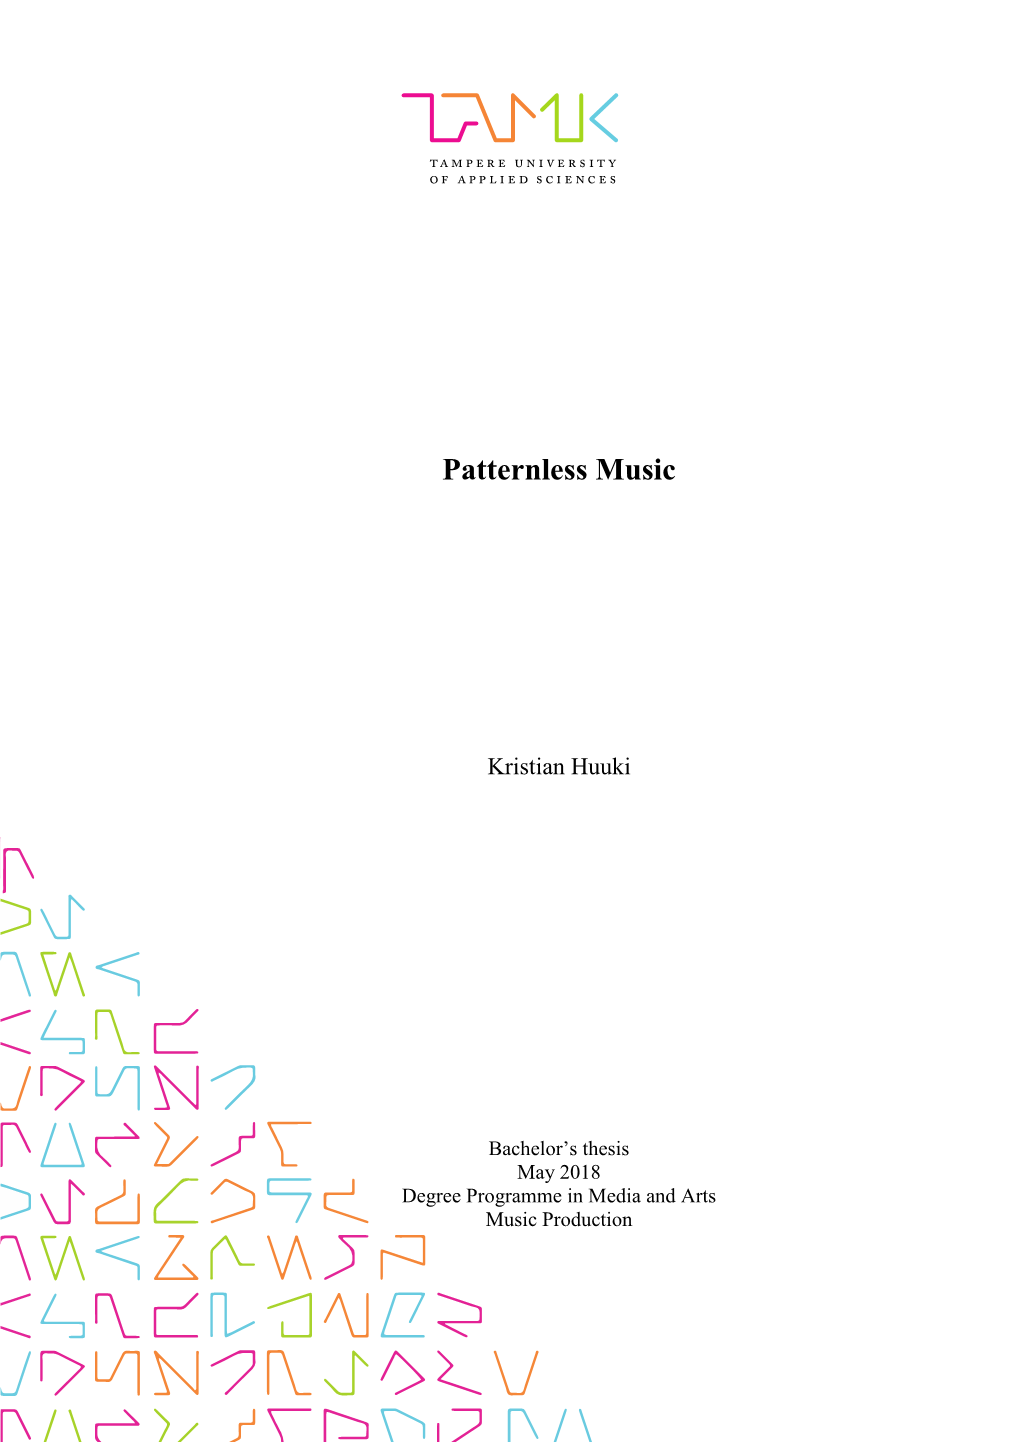 Patternless Music by Kristian Huuki